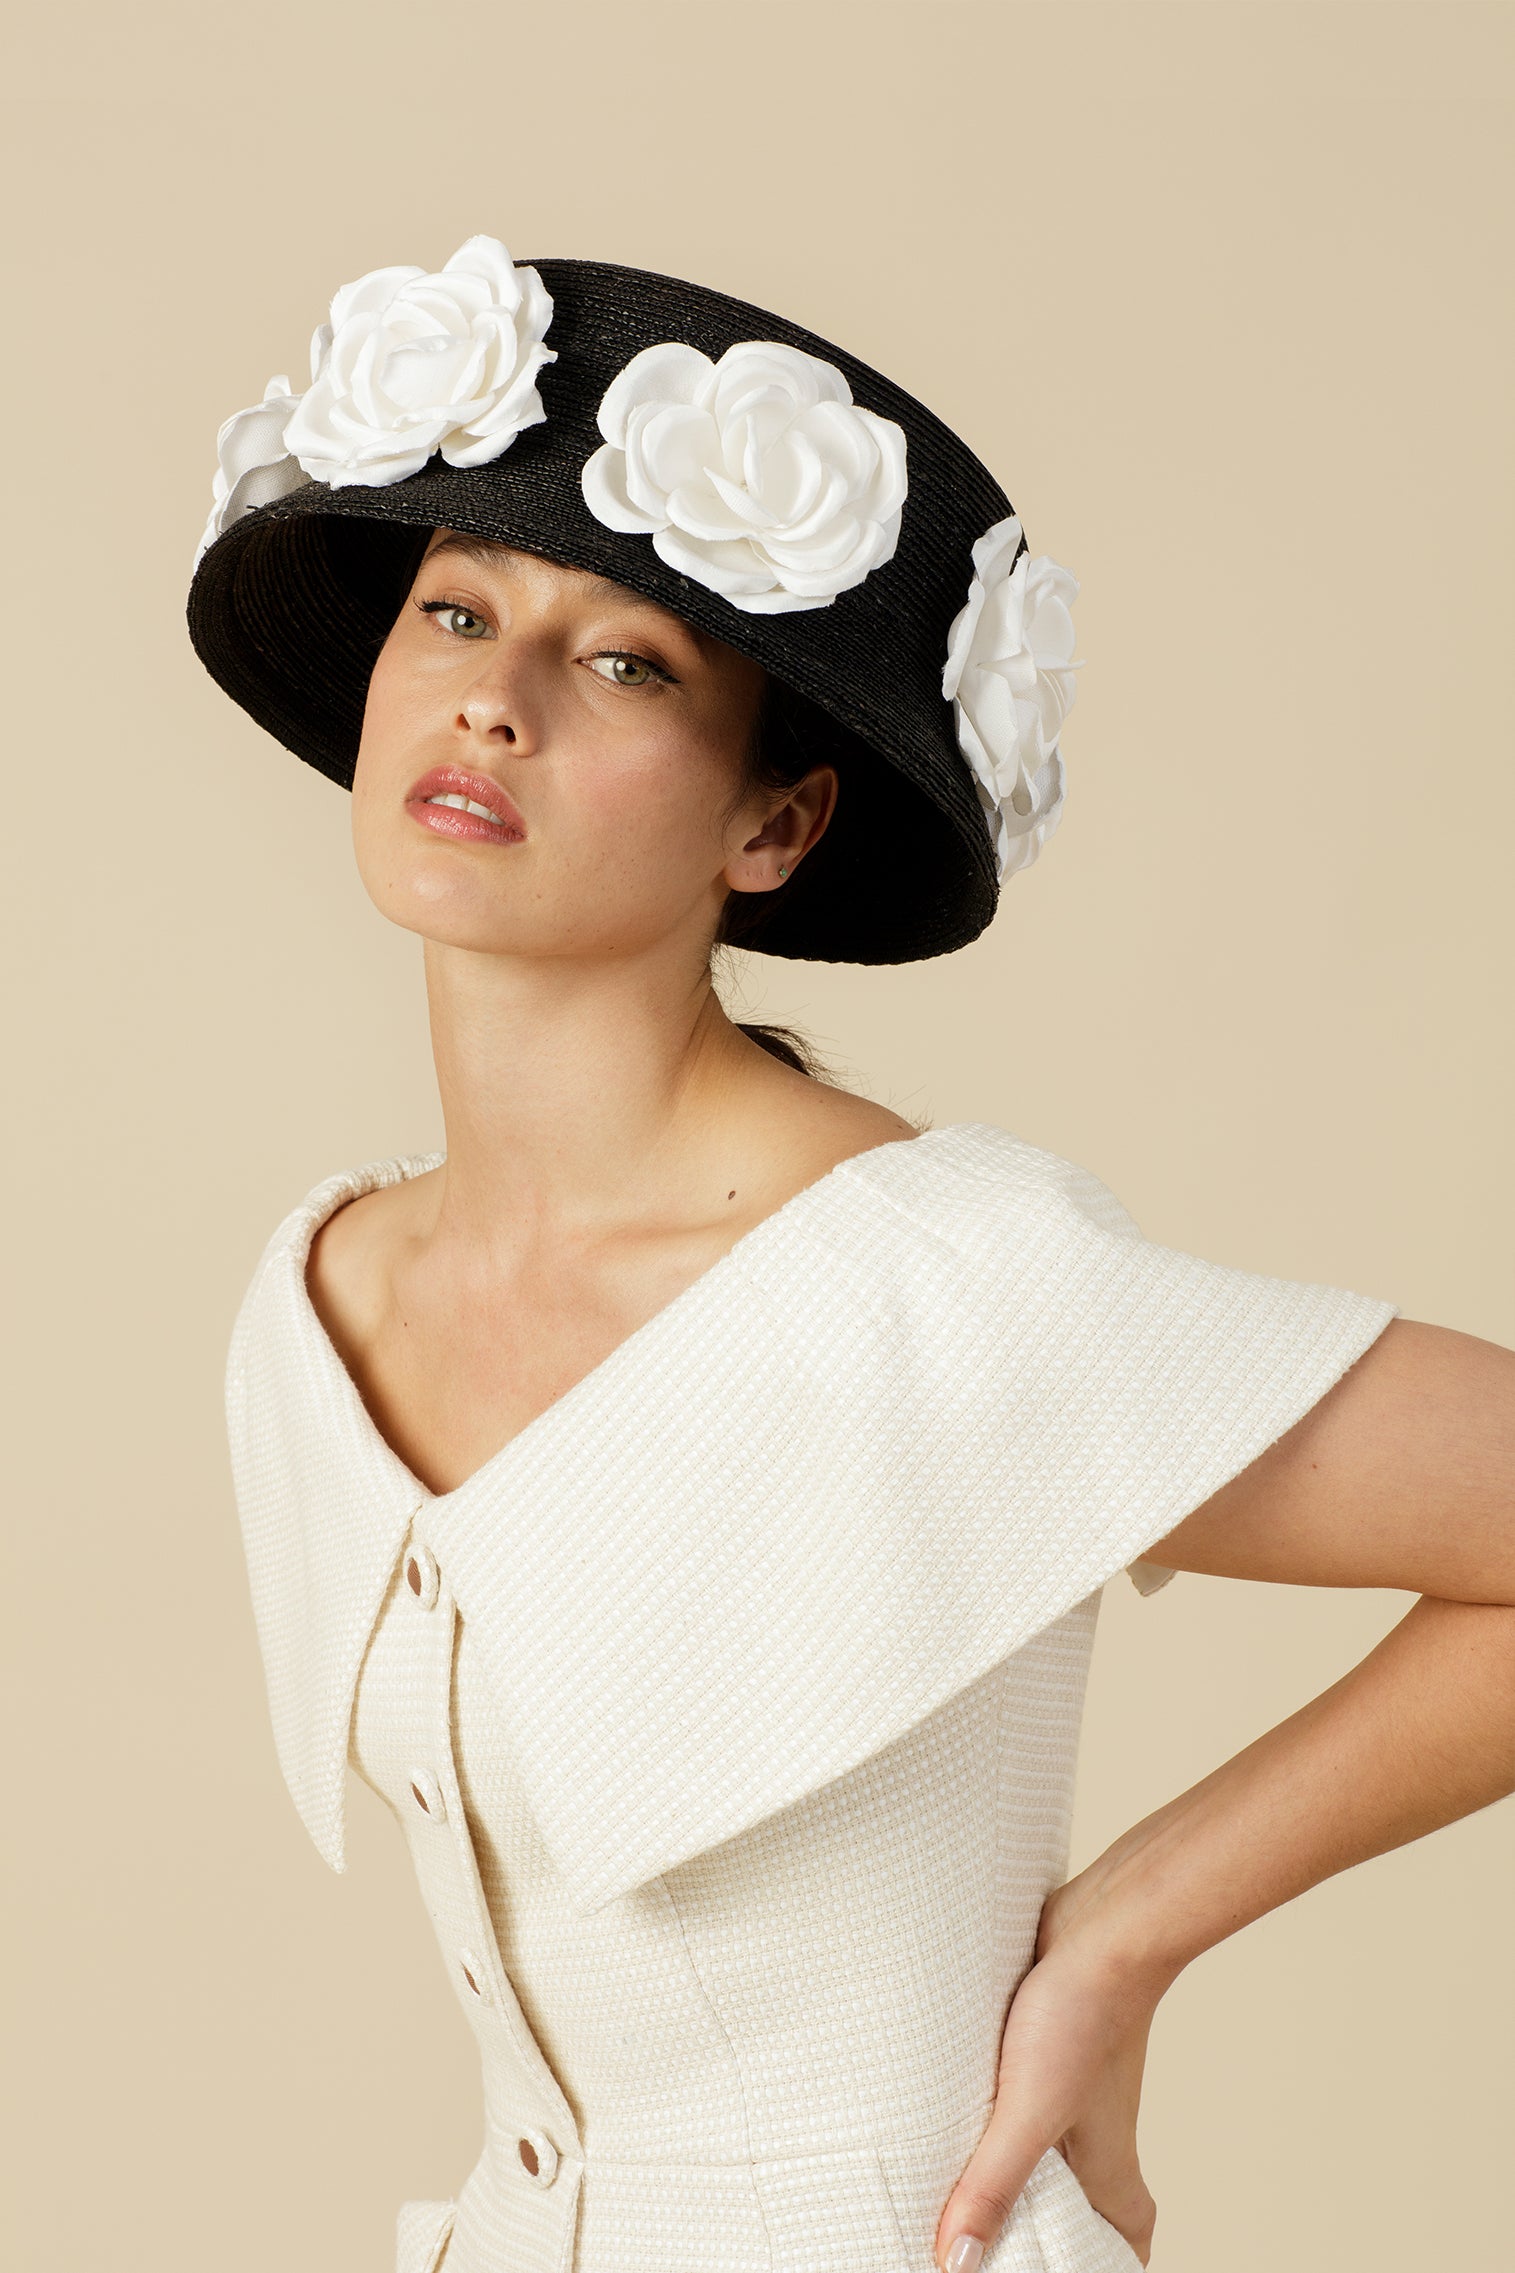 O'Keeffe Hat - Women’s Hats - Lock & Co. Hatters London UK